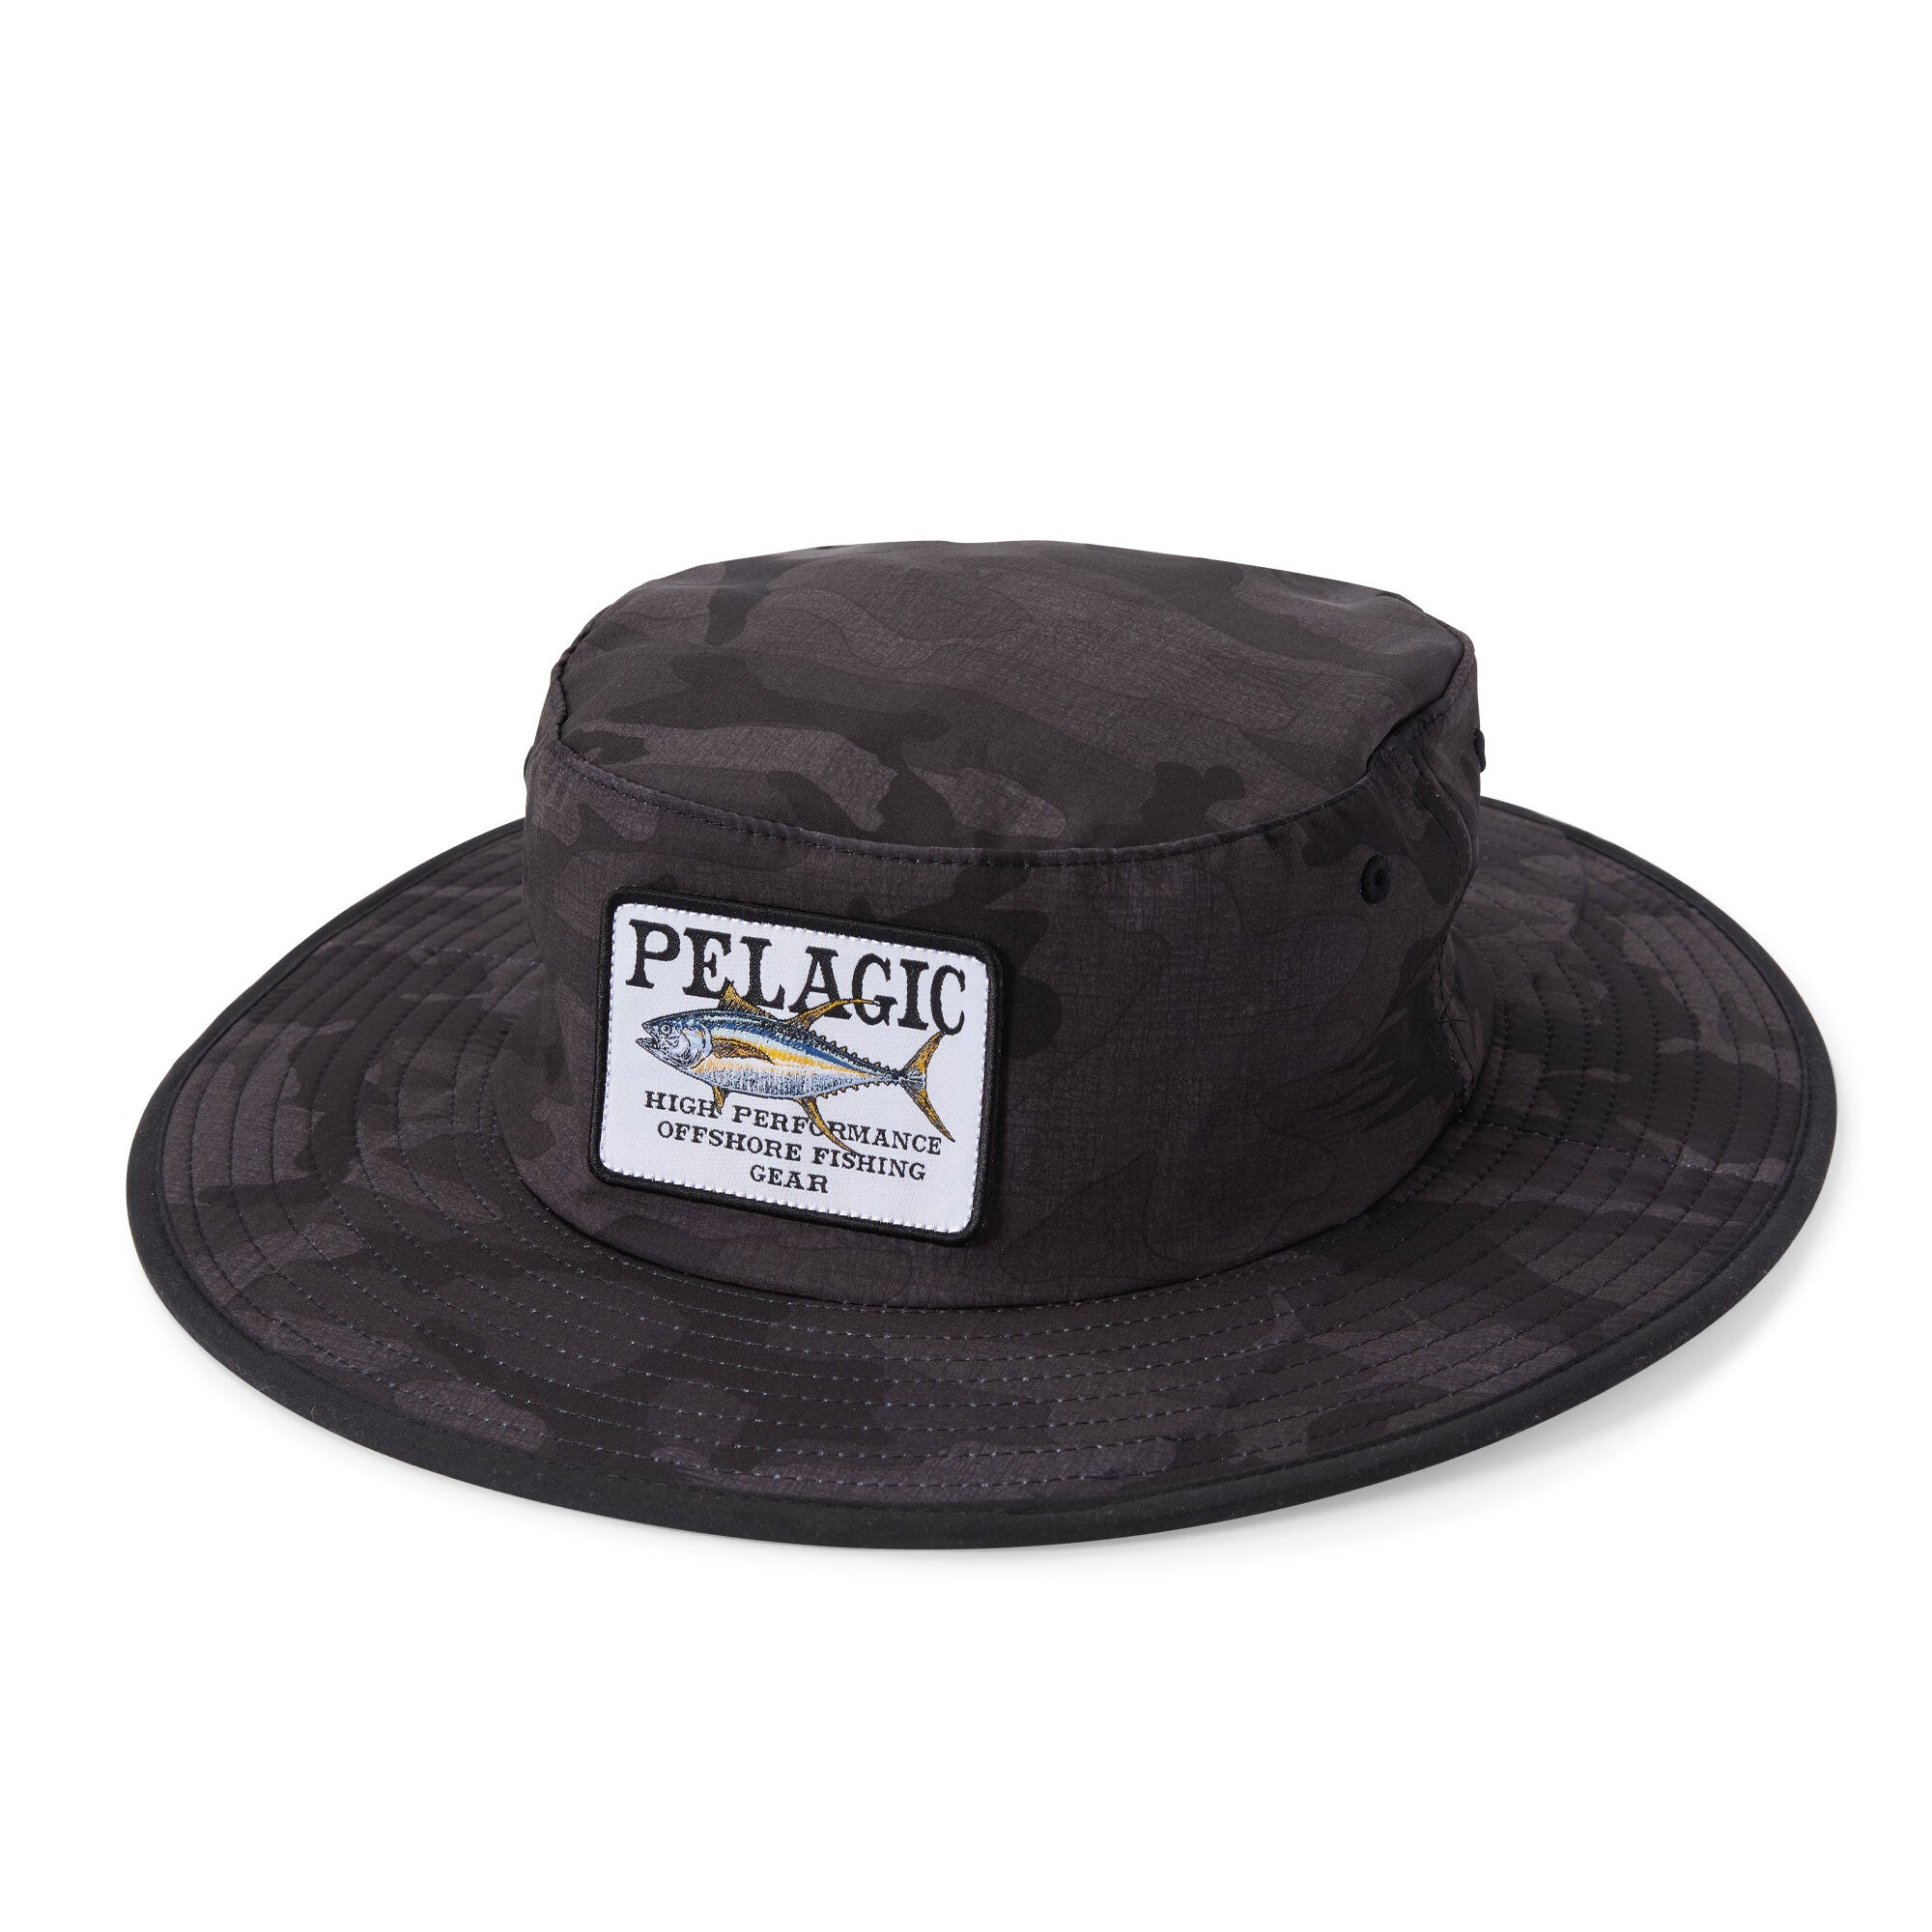 Sunsetter Pro Bucket Hat